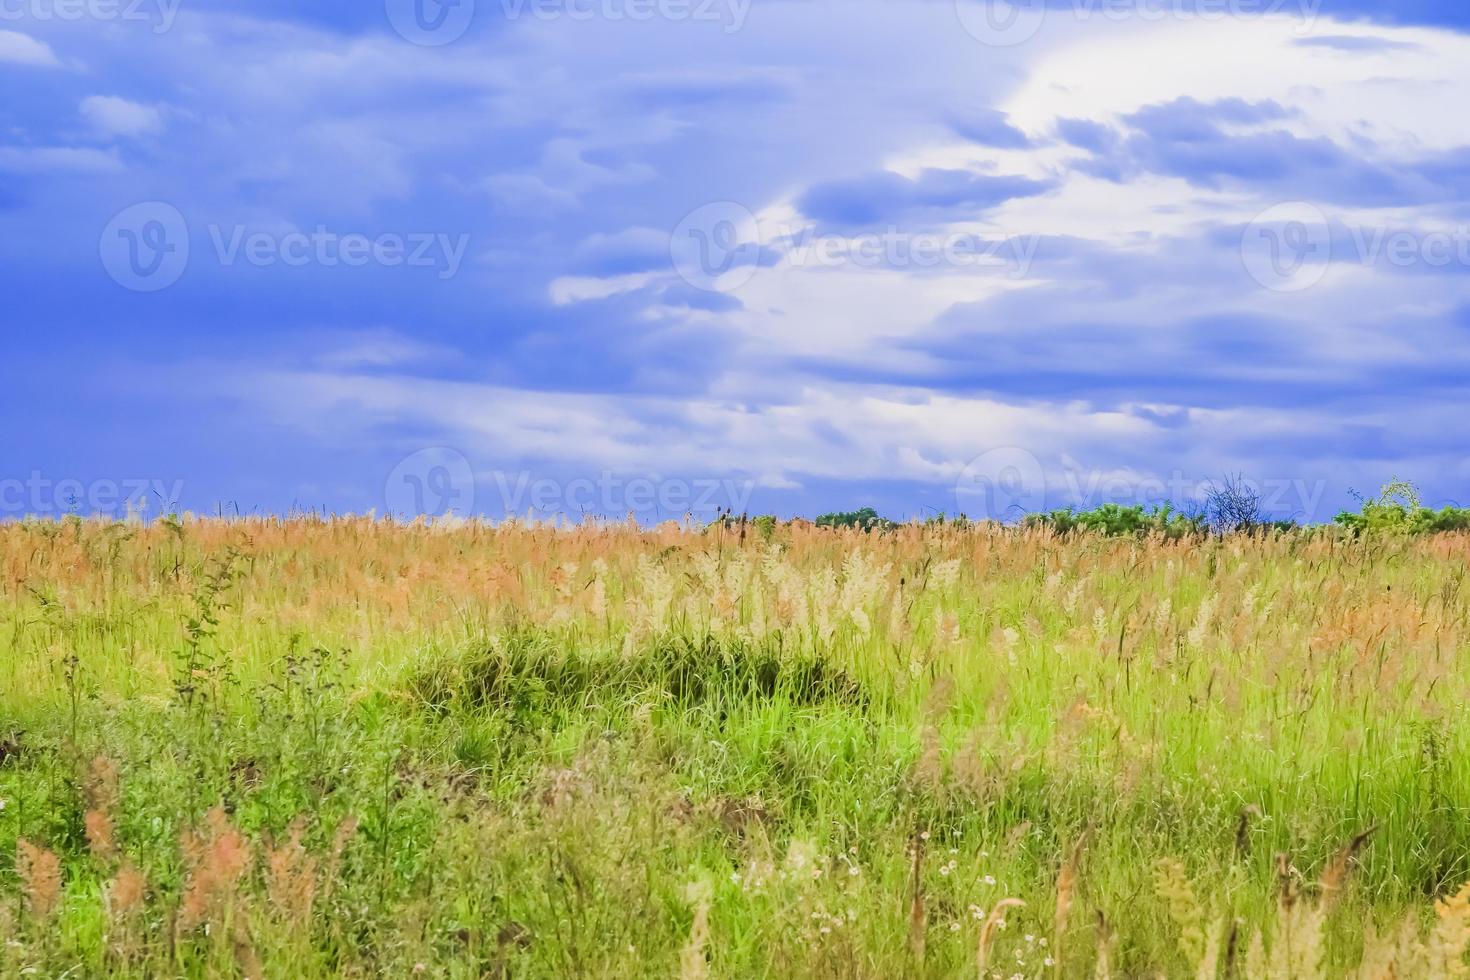 verde campo paesaggio con blu cielo e tempestoso nuvole. foto